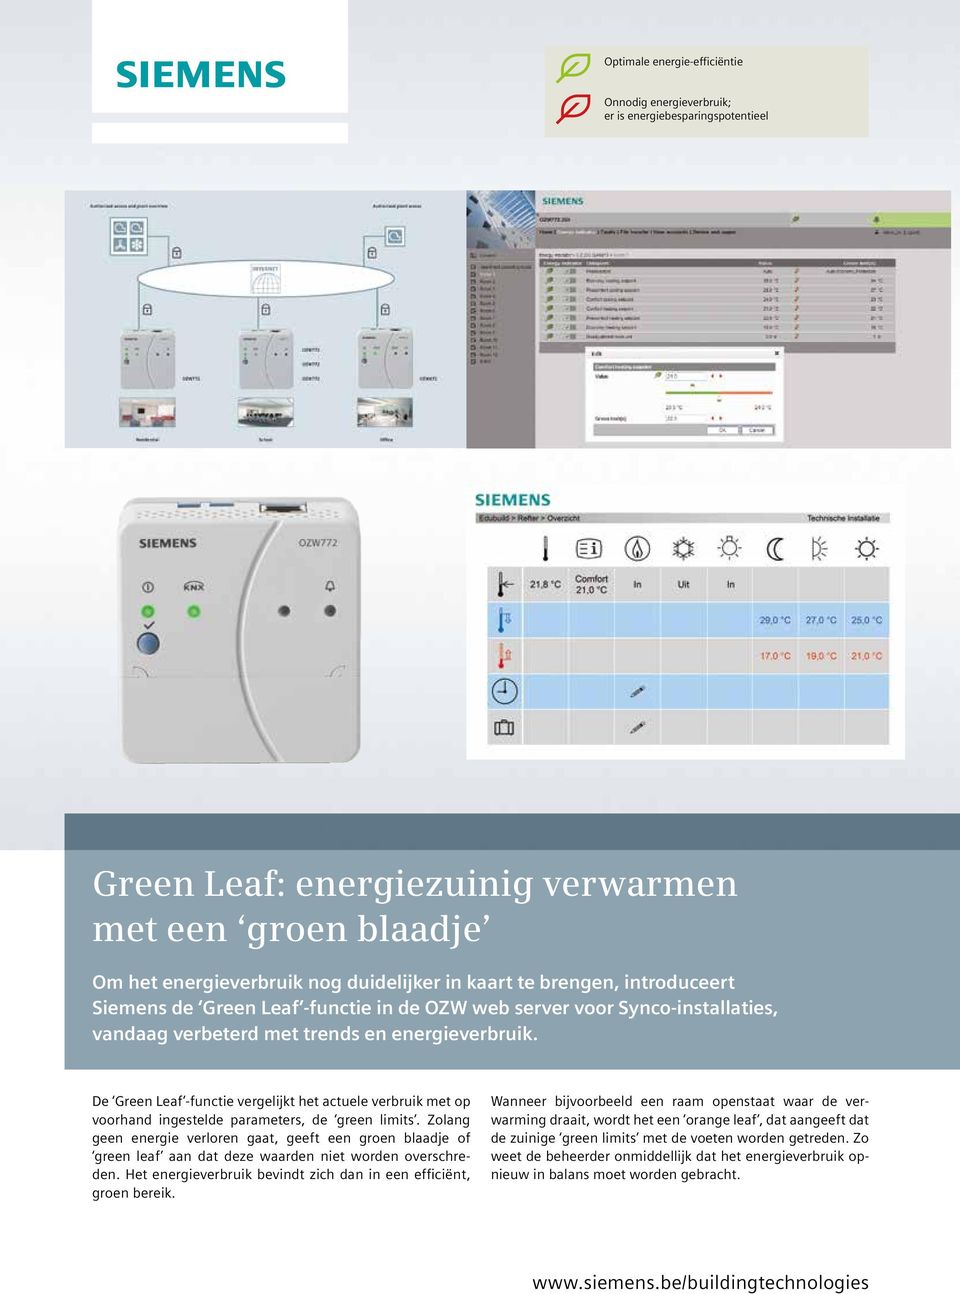 De Green Leaf -functie vergelijkt het actuele verbruik met op voorhand ingestelde parameters, de green limits.